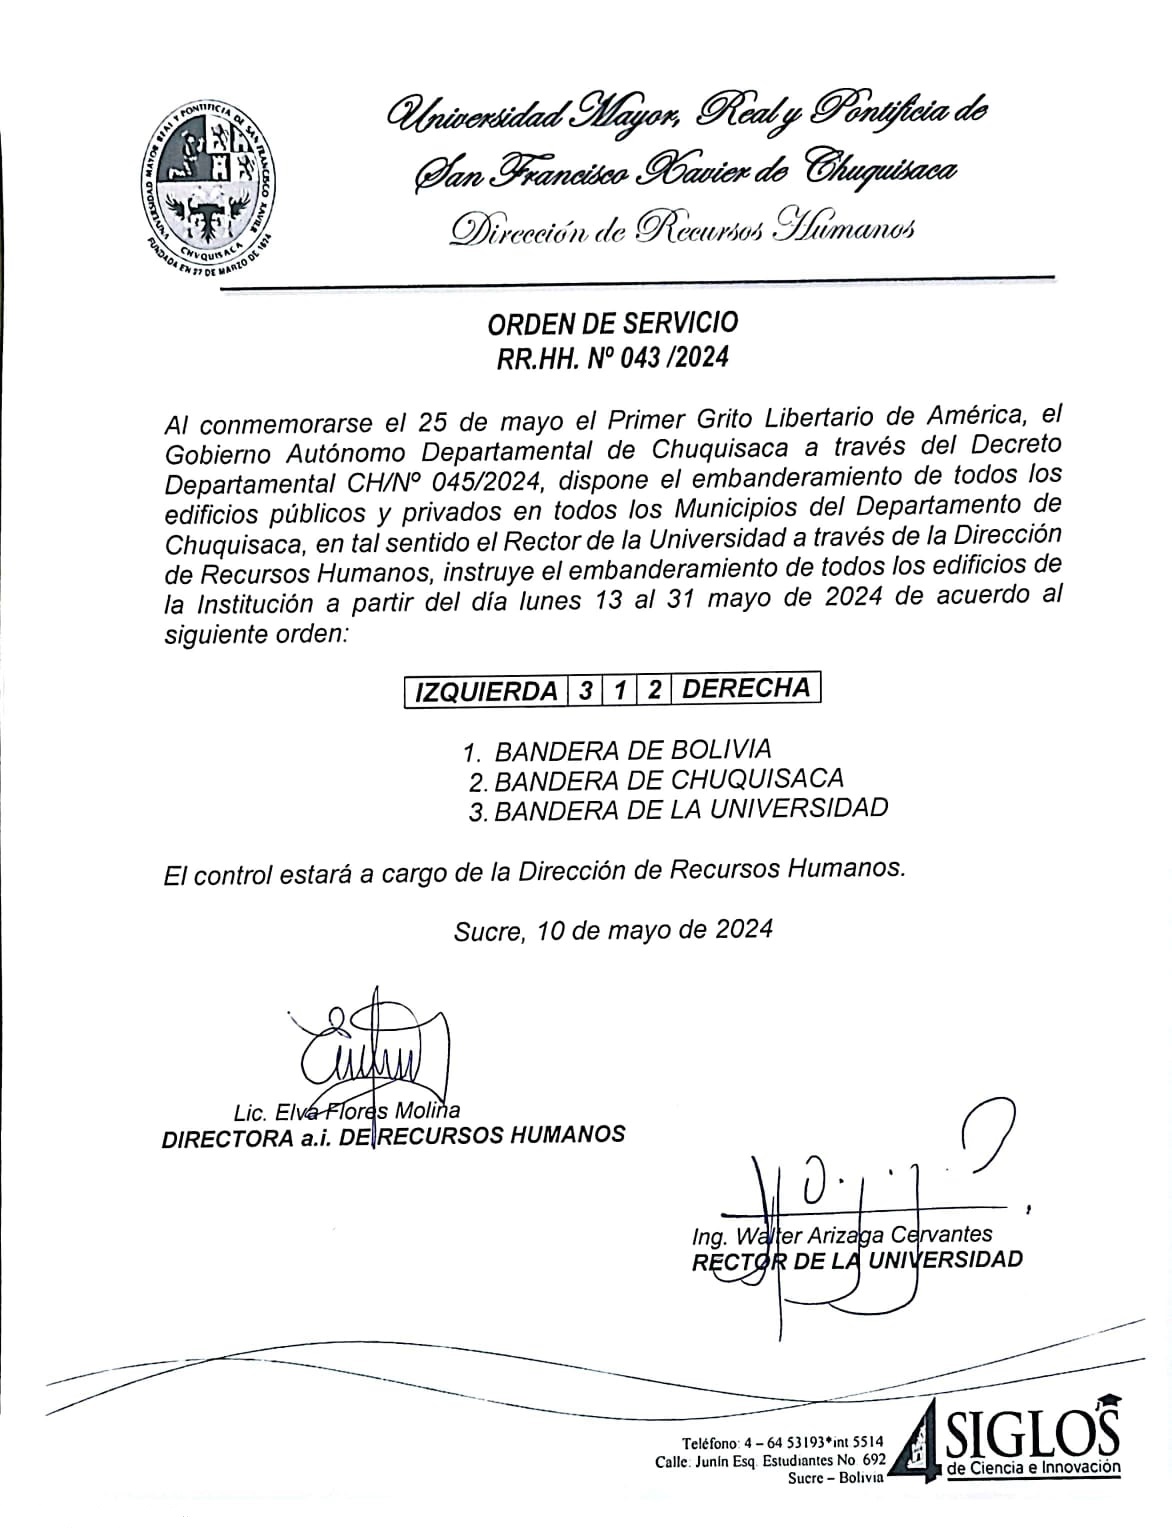 ORDEN DE SERVICIO RR.HH. Nº 041/2024, EMBANDERAMIENTO DE EDIFICIOS PÚBLICOS Y PRIVADOS.